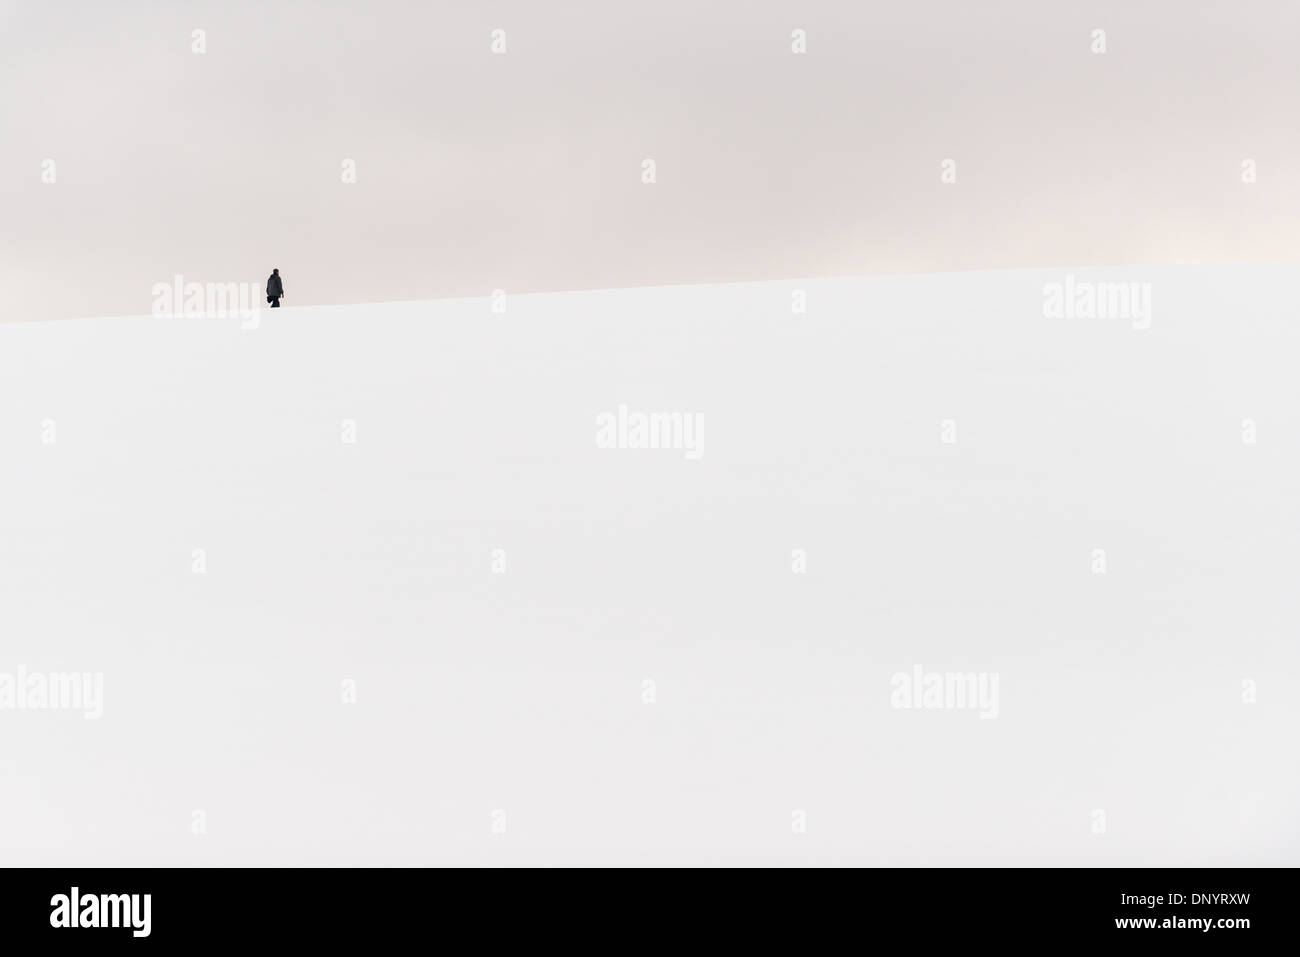 Antartide - Una persona escursioni alla sommità di una piccola coperta di neve in collina Hughes Bay sulla costa occidentale della penisola antartica. Foto Stock